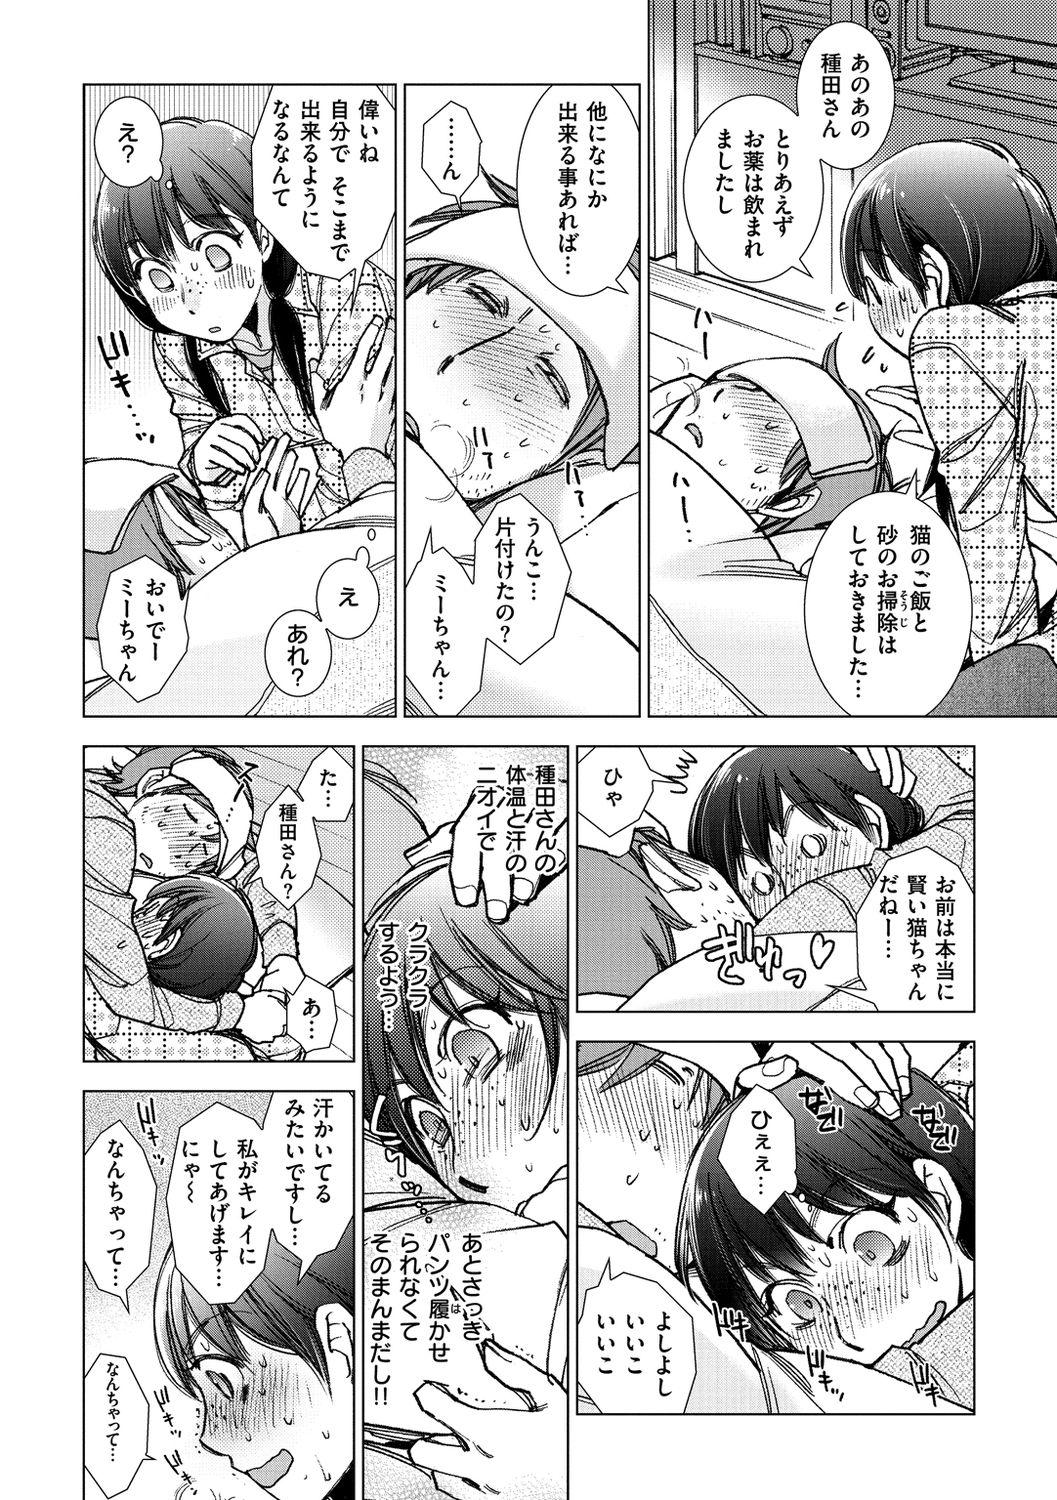 Pasivo Engei-ten no Yasashii Koibito Flaca - Page 10